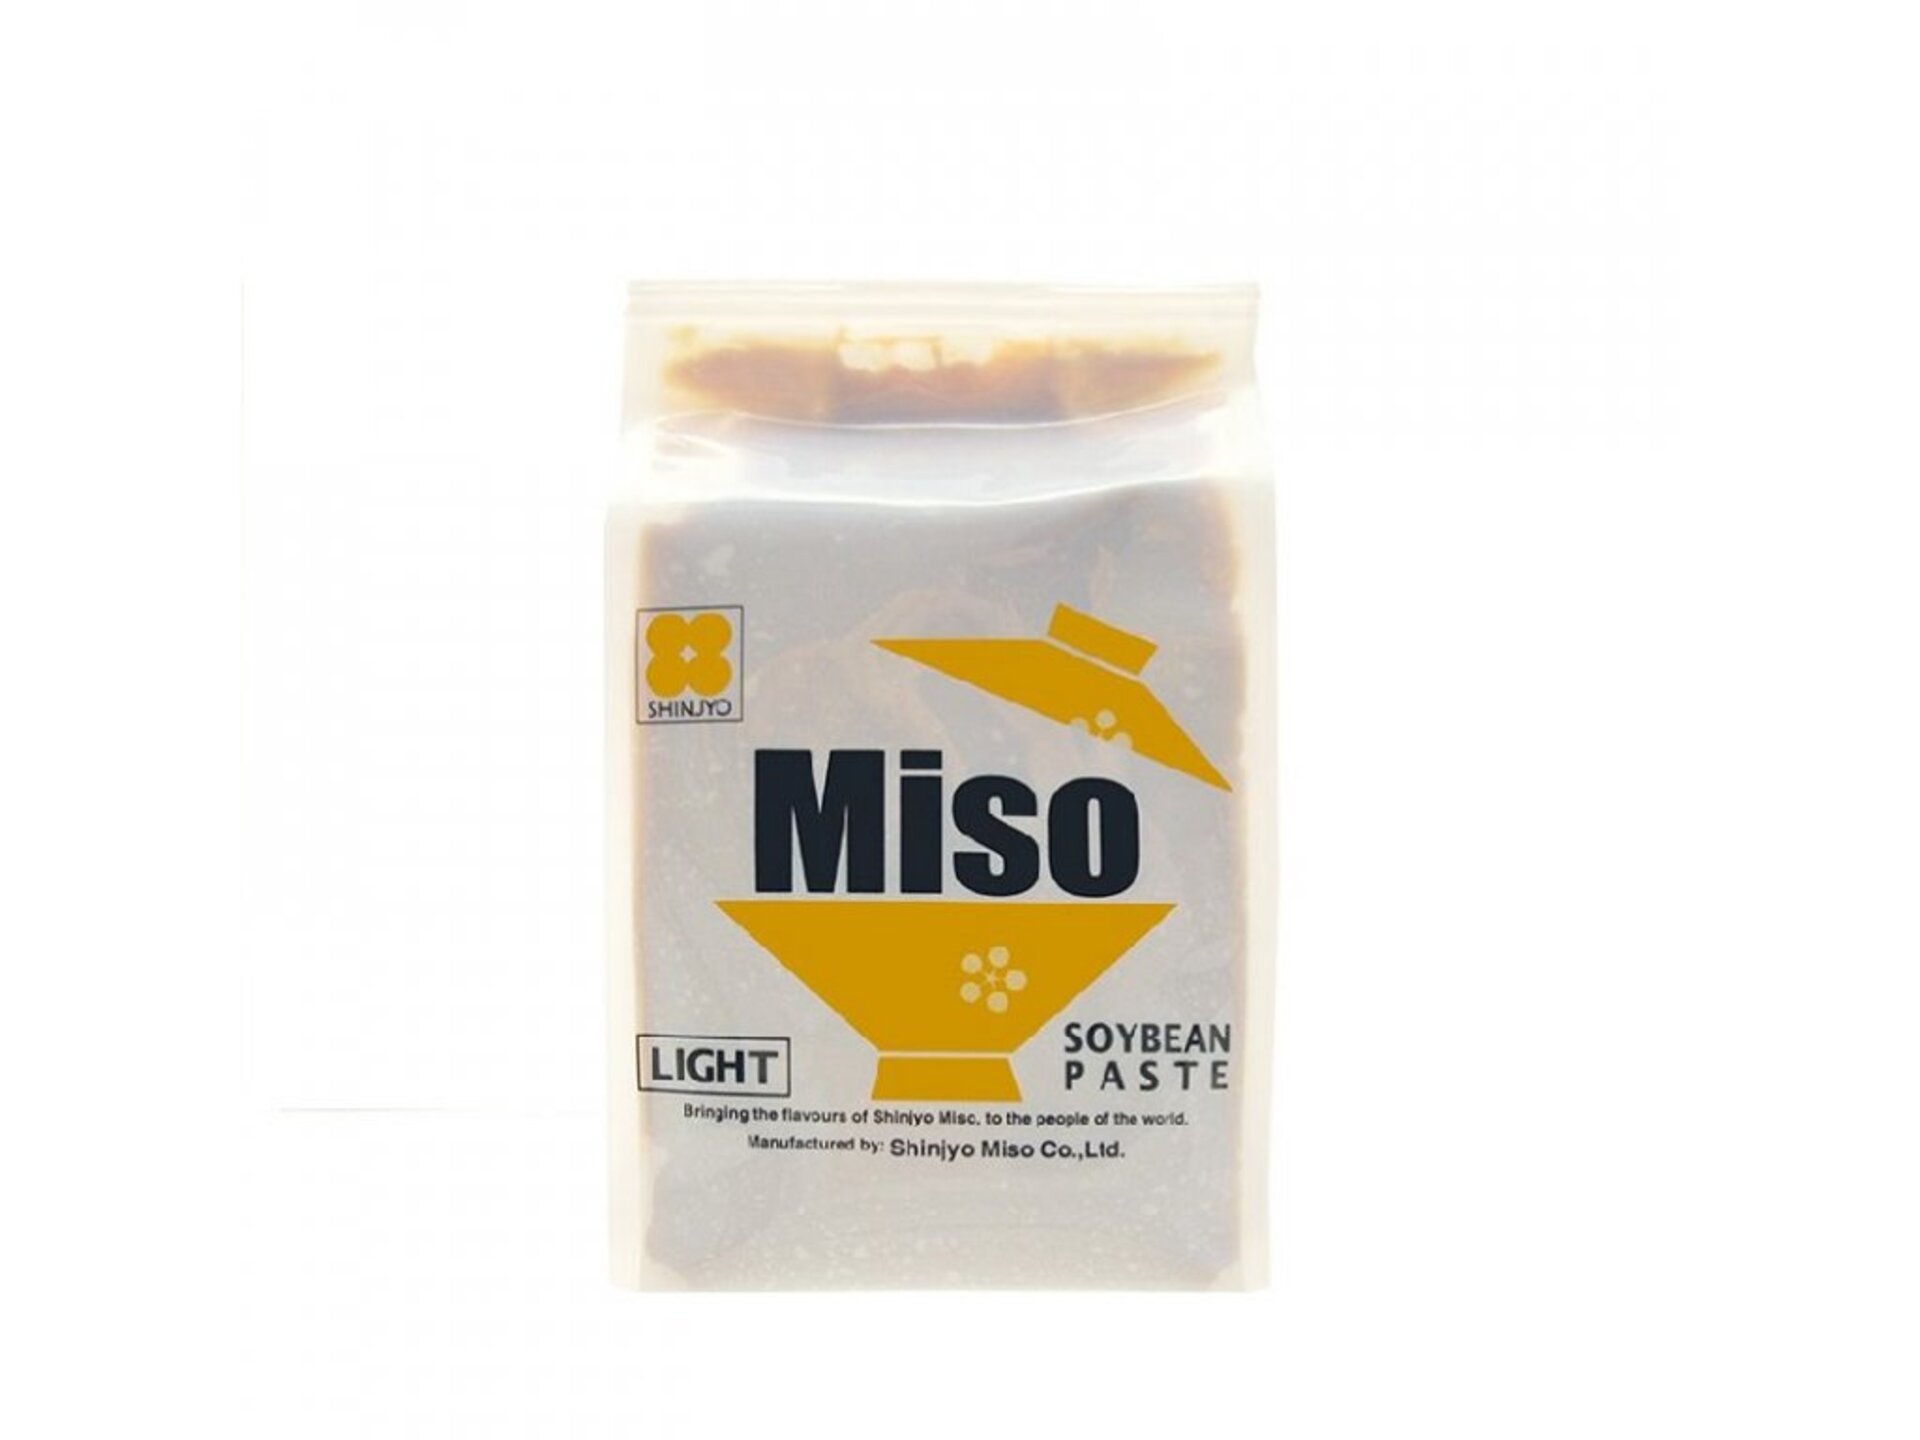 Shinjyo Shiro Miso pasta svetlá 500 g